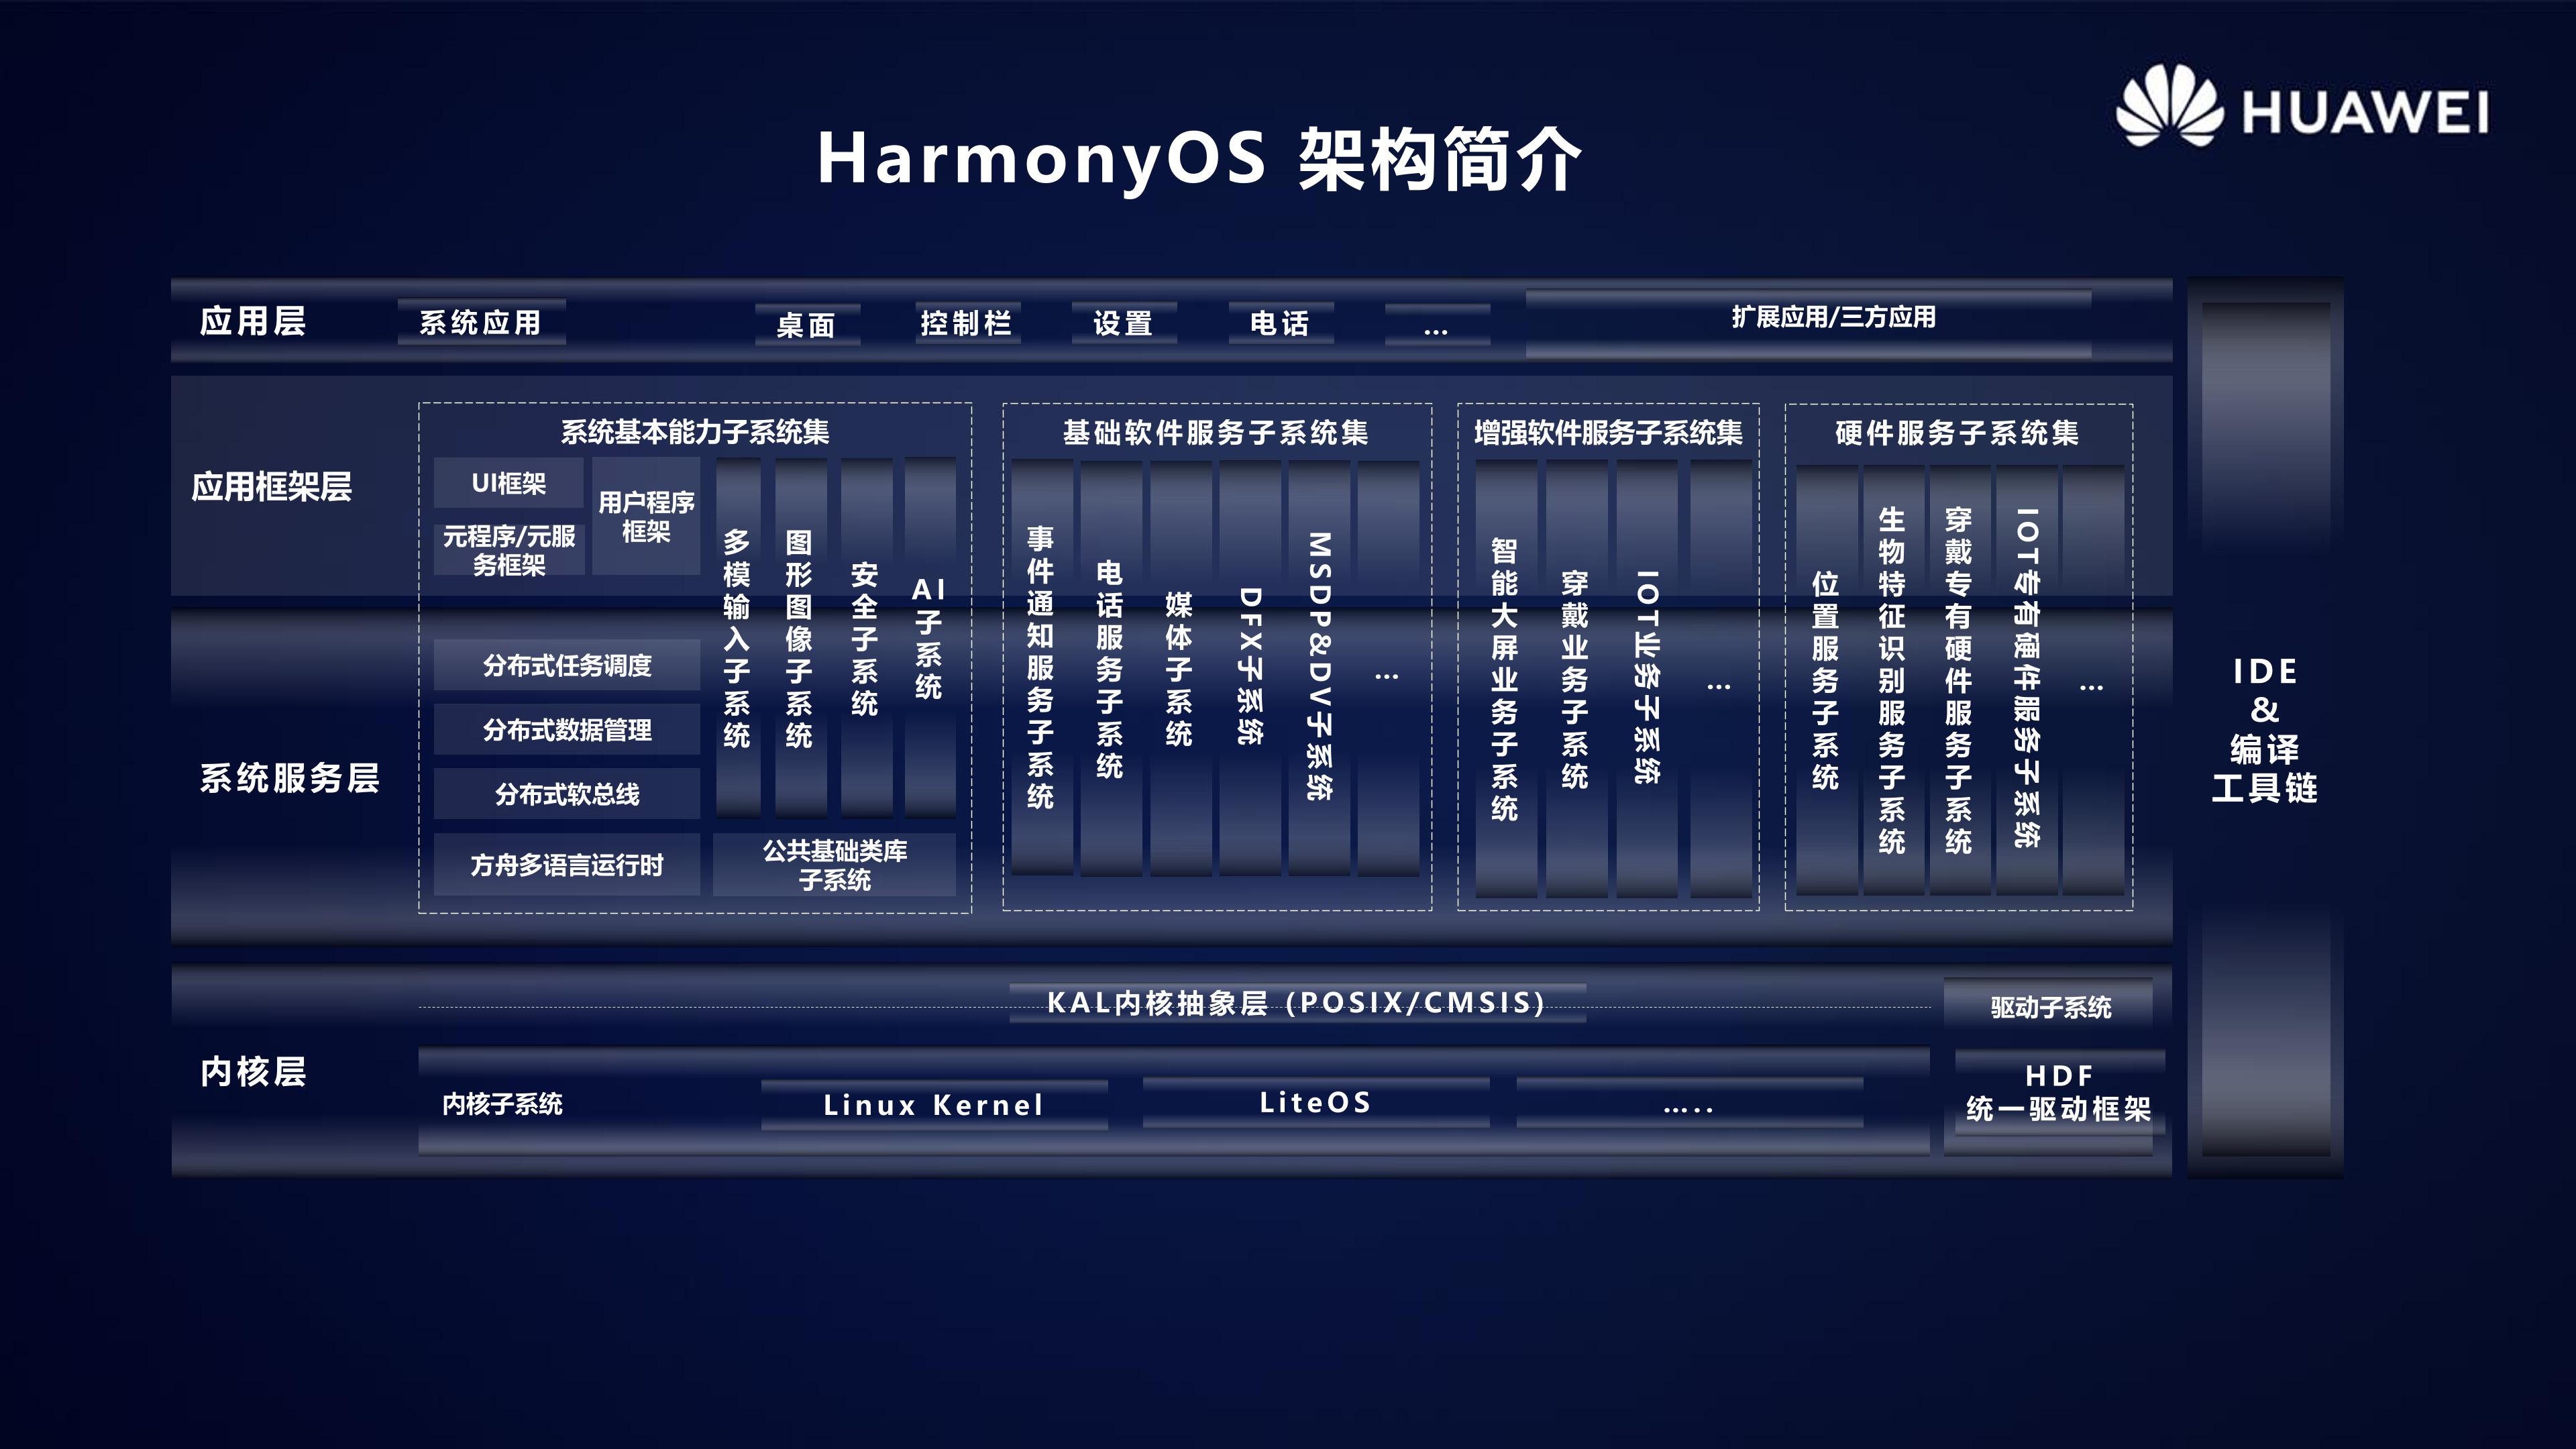 HarmonyOS 2.0手机开发者Beta活动广州站内部PPT公开-鸿蒙开发者社区